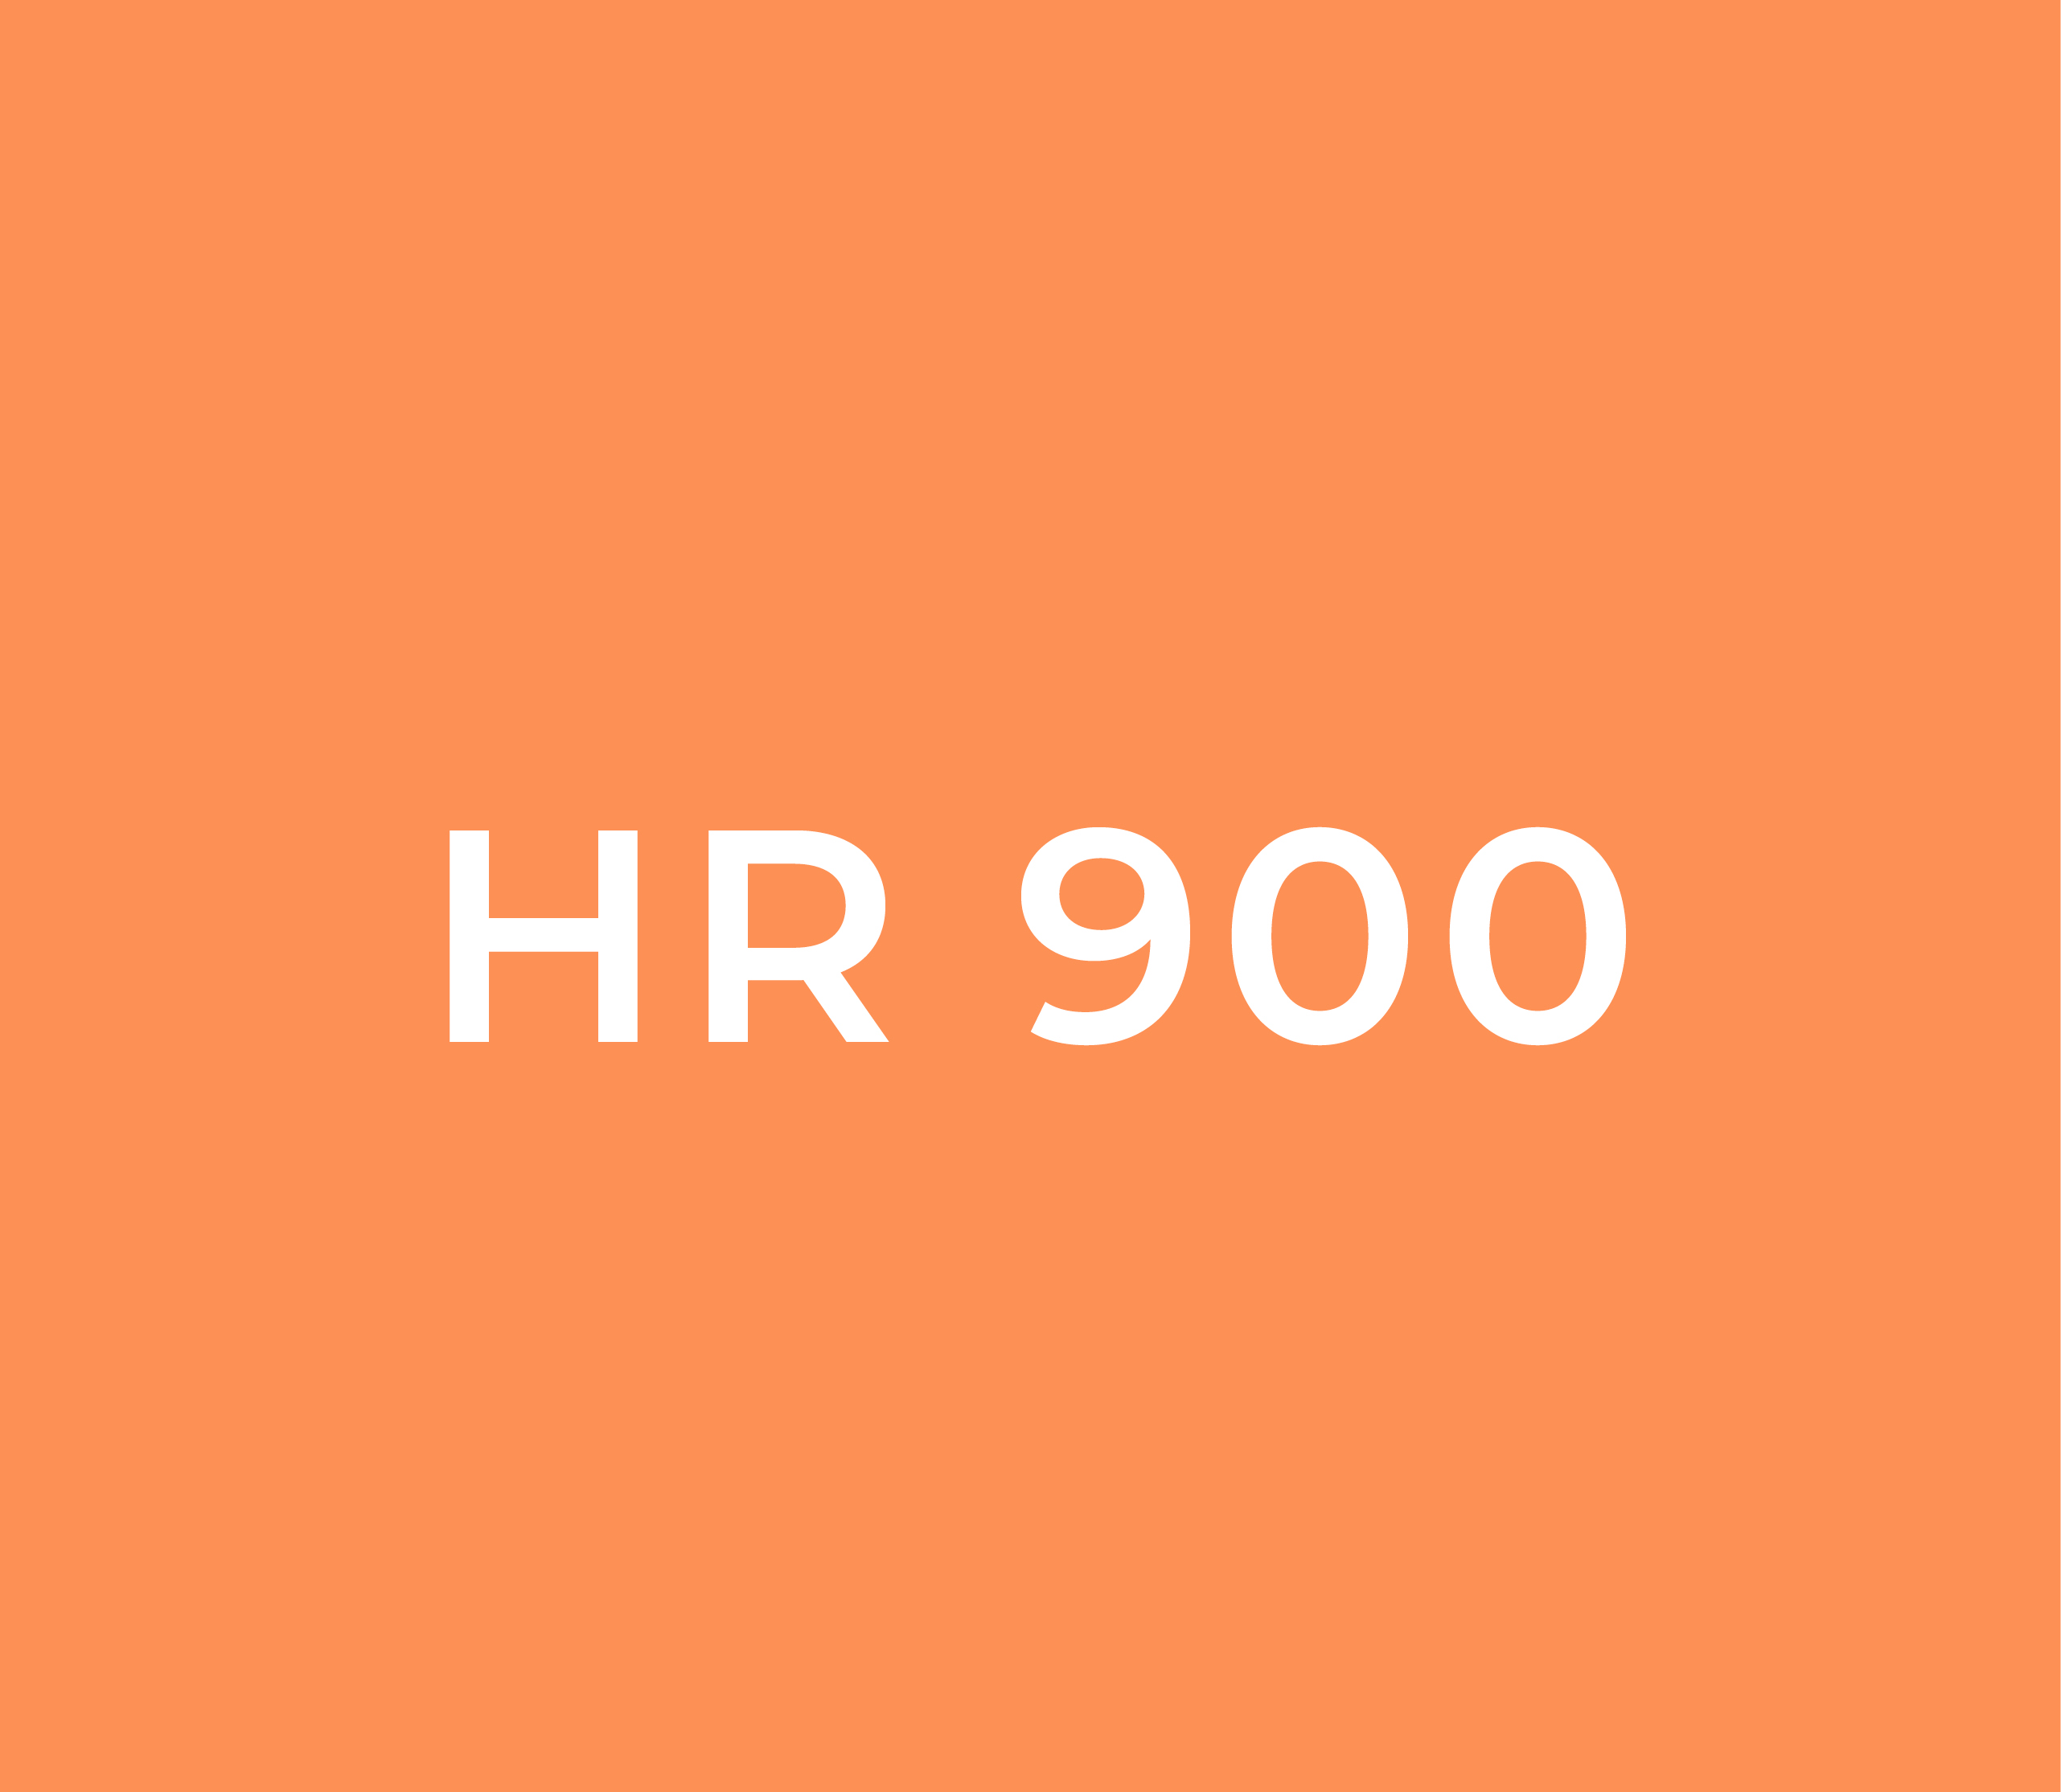 HR 900